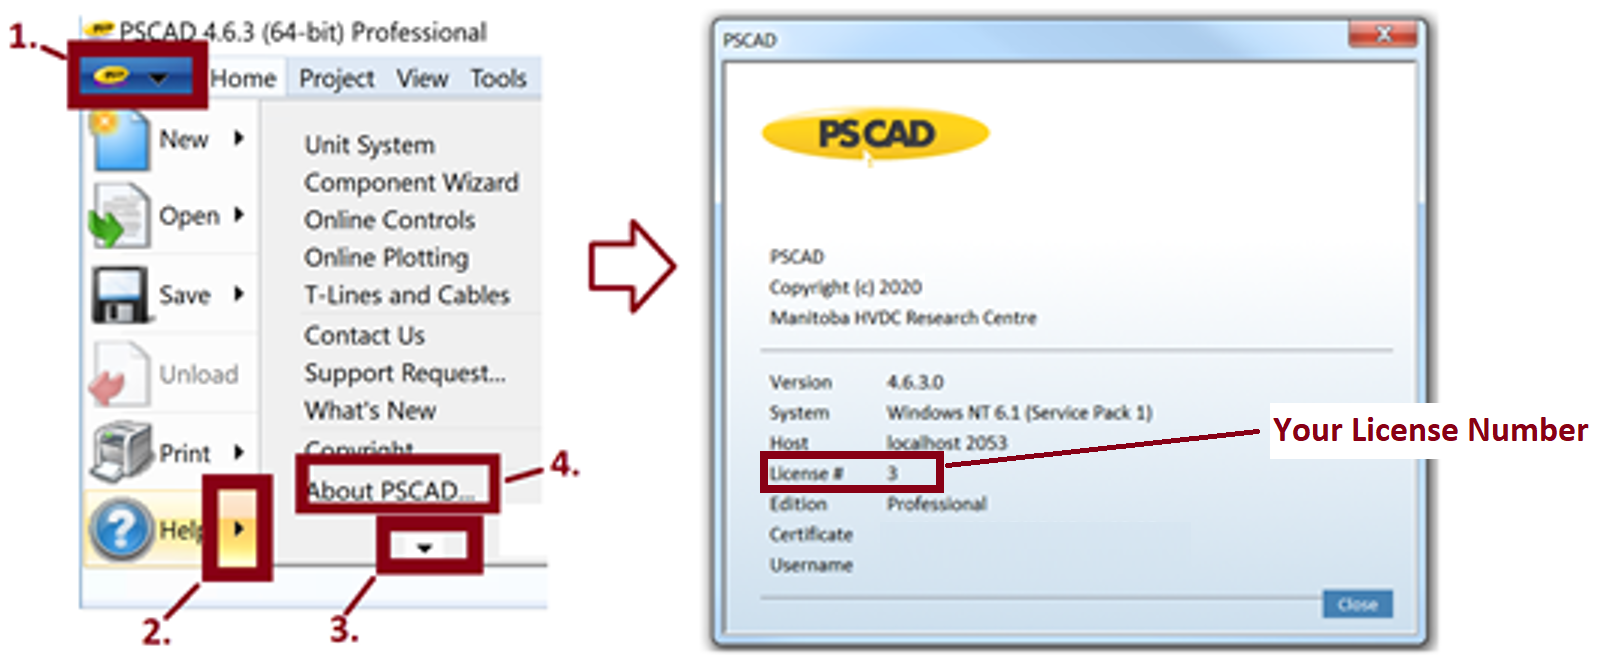 PSCAD Application - Display License Dialog.png (456 KB)